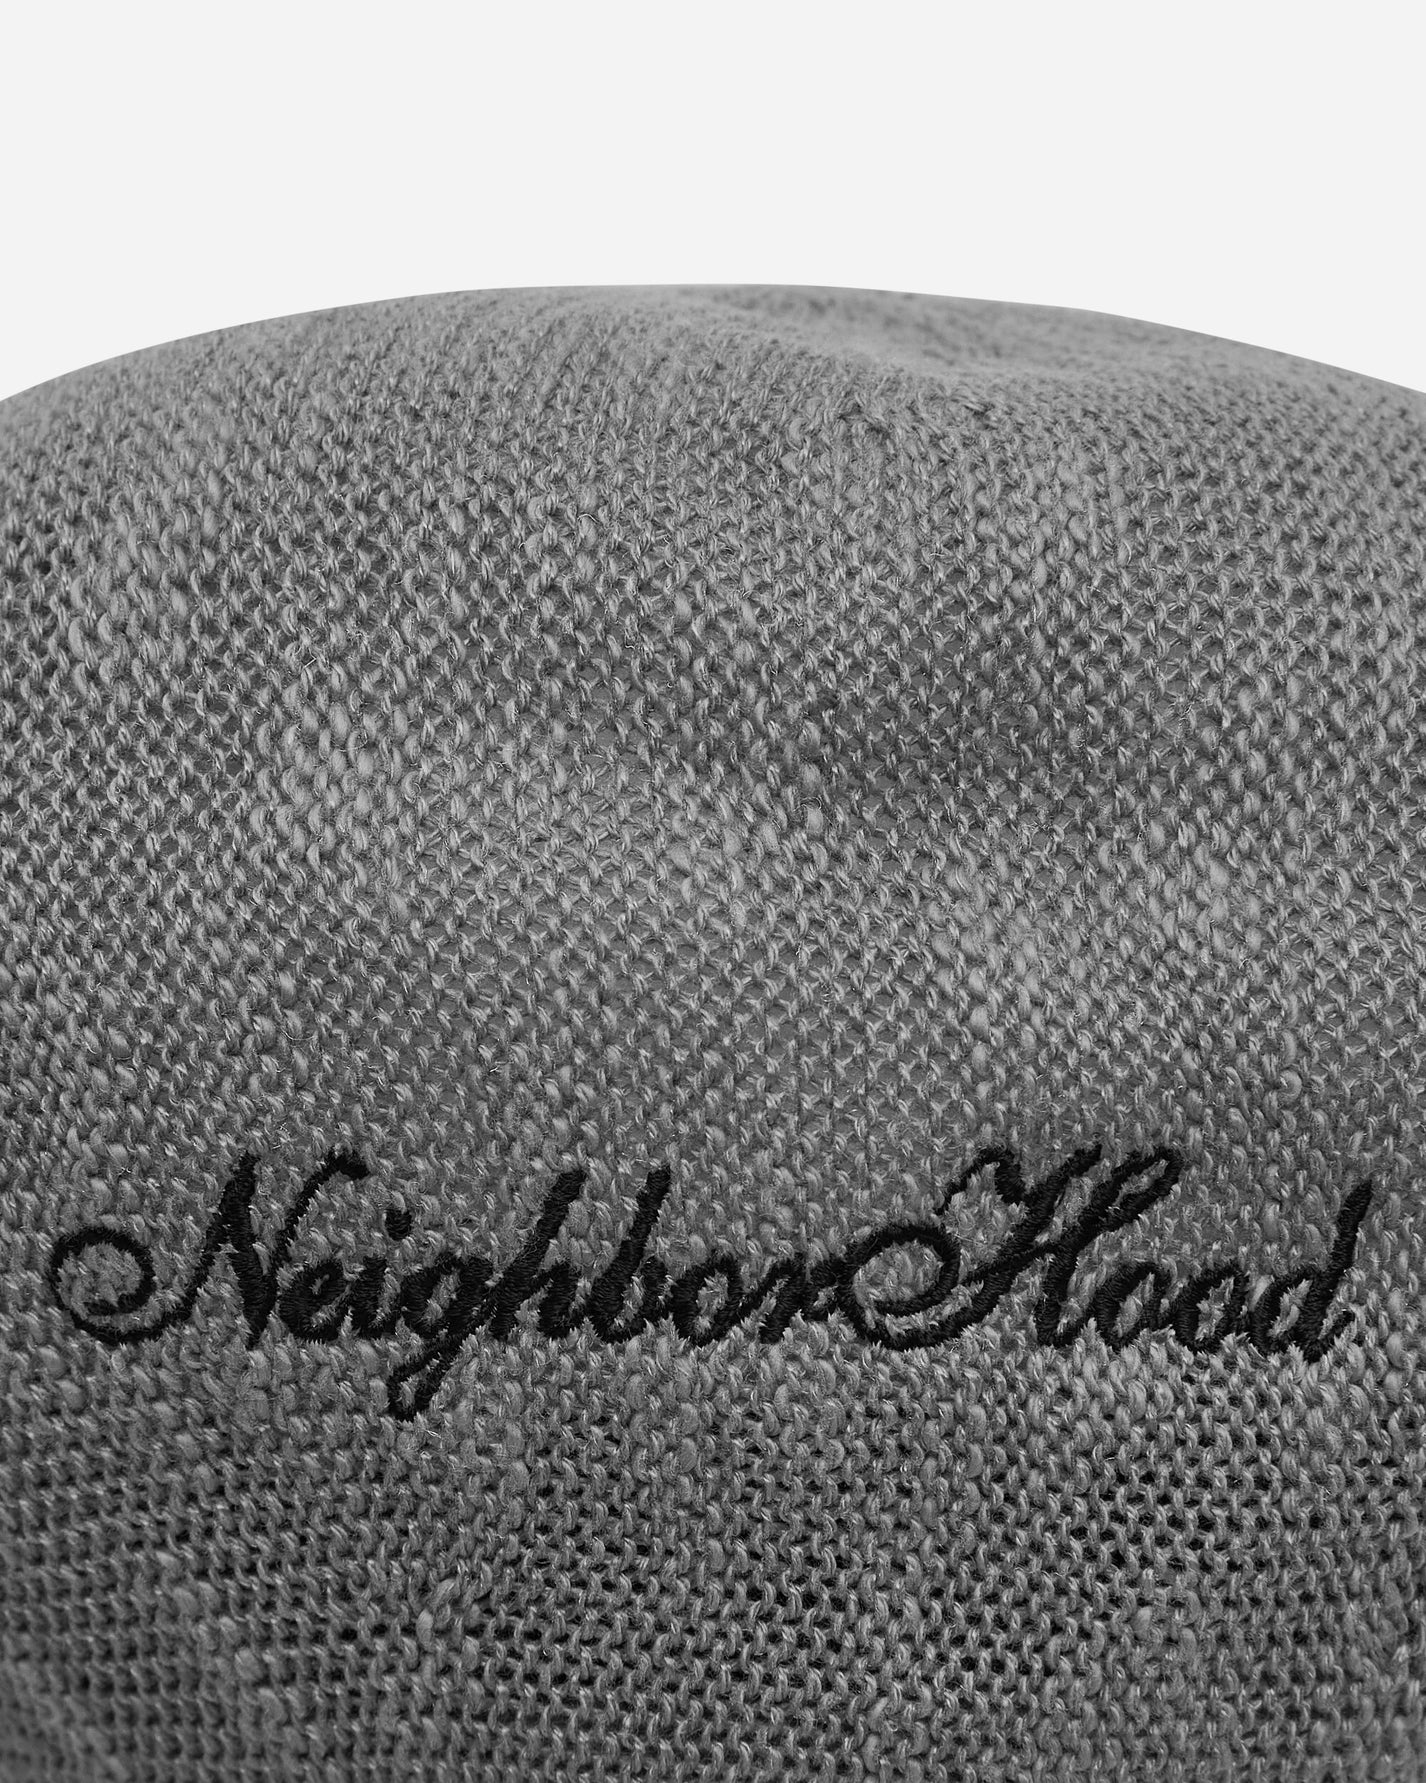 Neighborhood Summer Beret Grey Hats Beanies 24111NH-HT01 GY